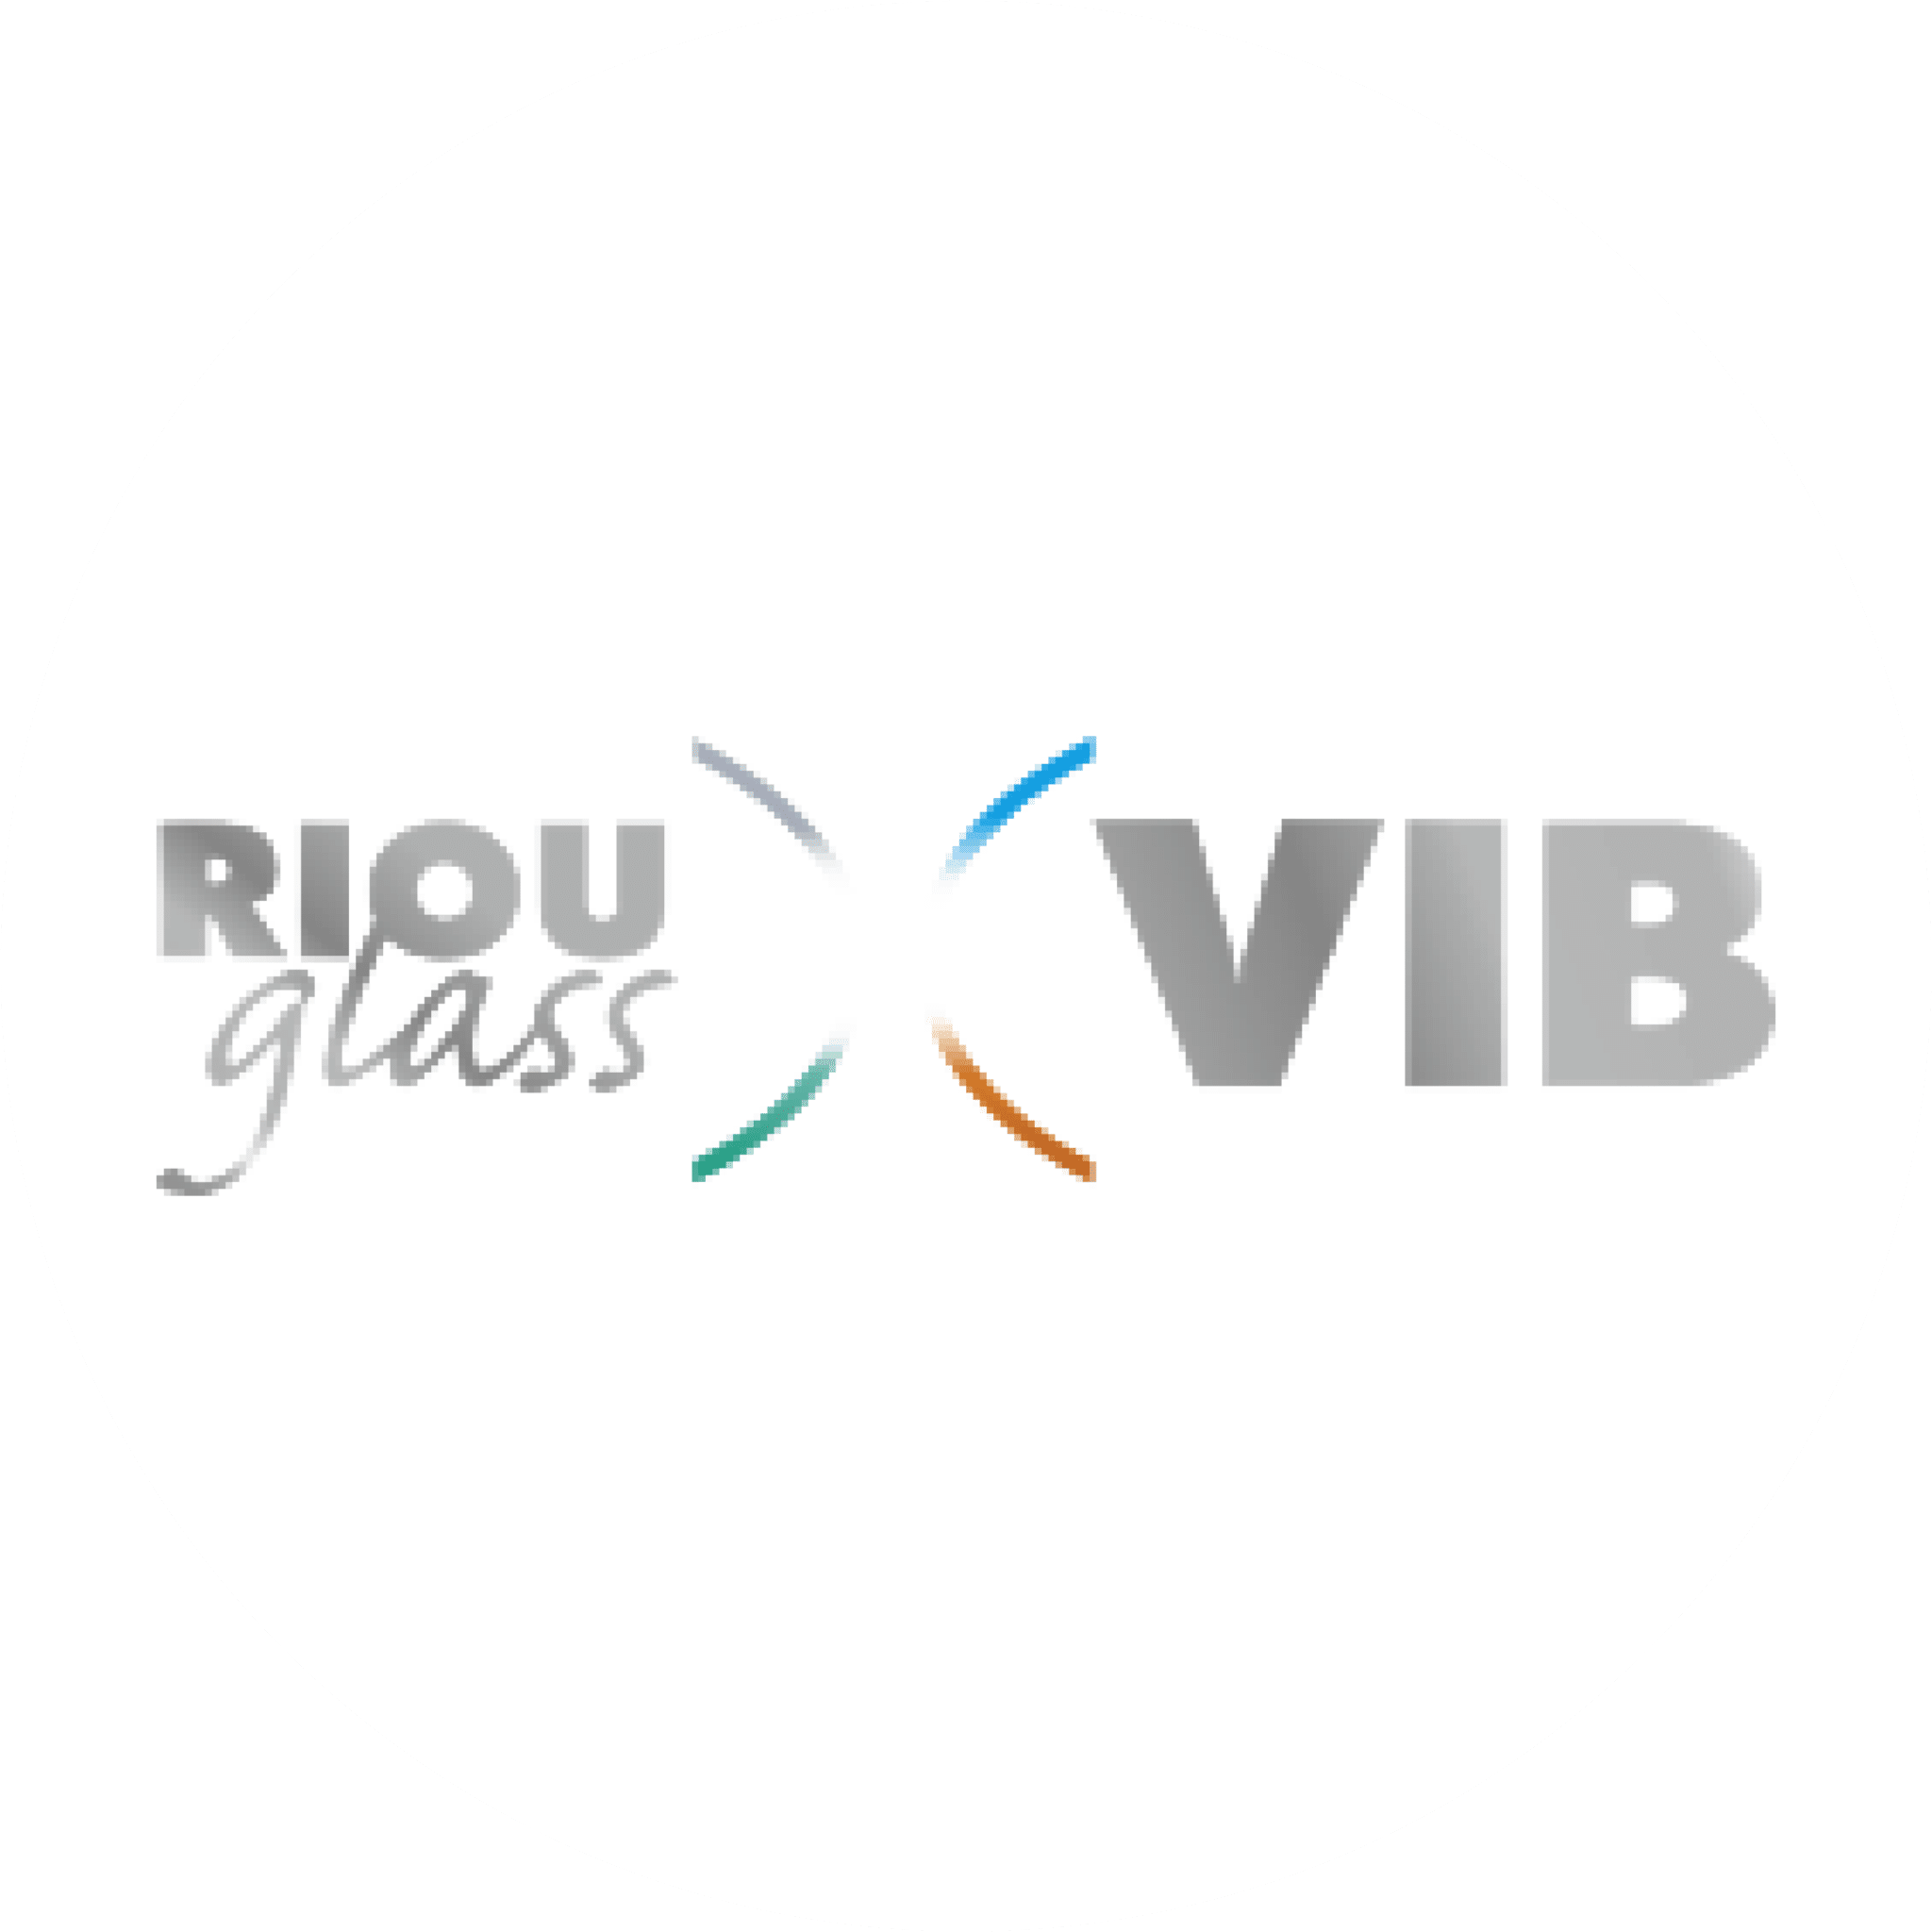 Riou Glass